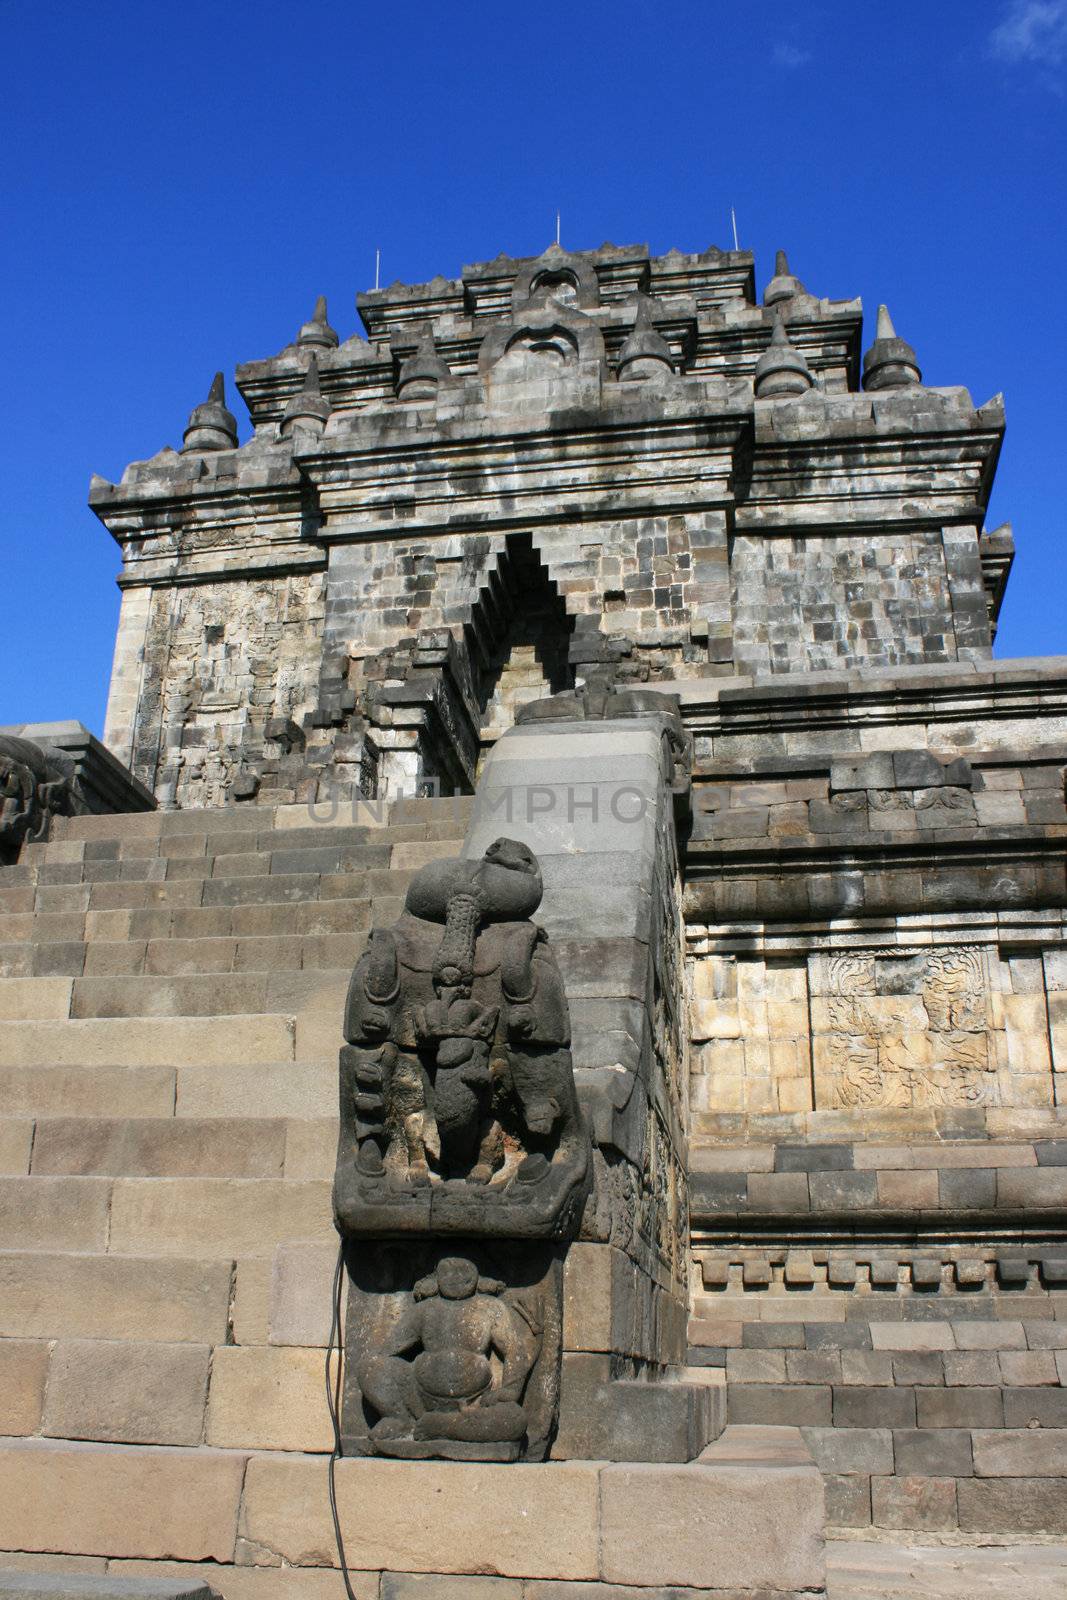 An old temple near Borobudur.